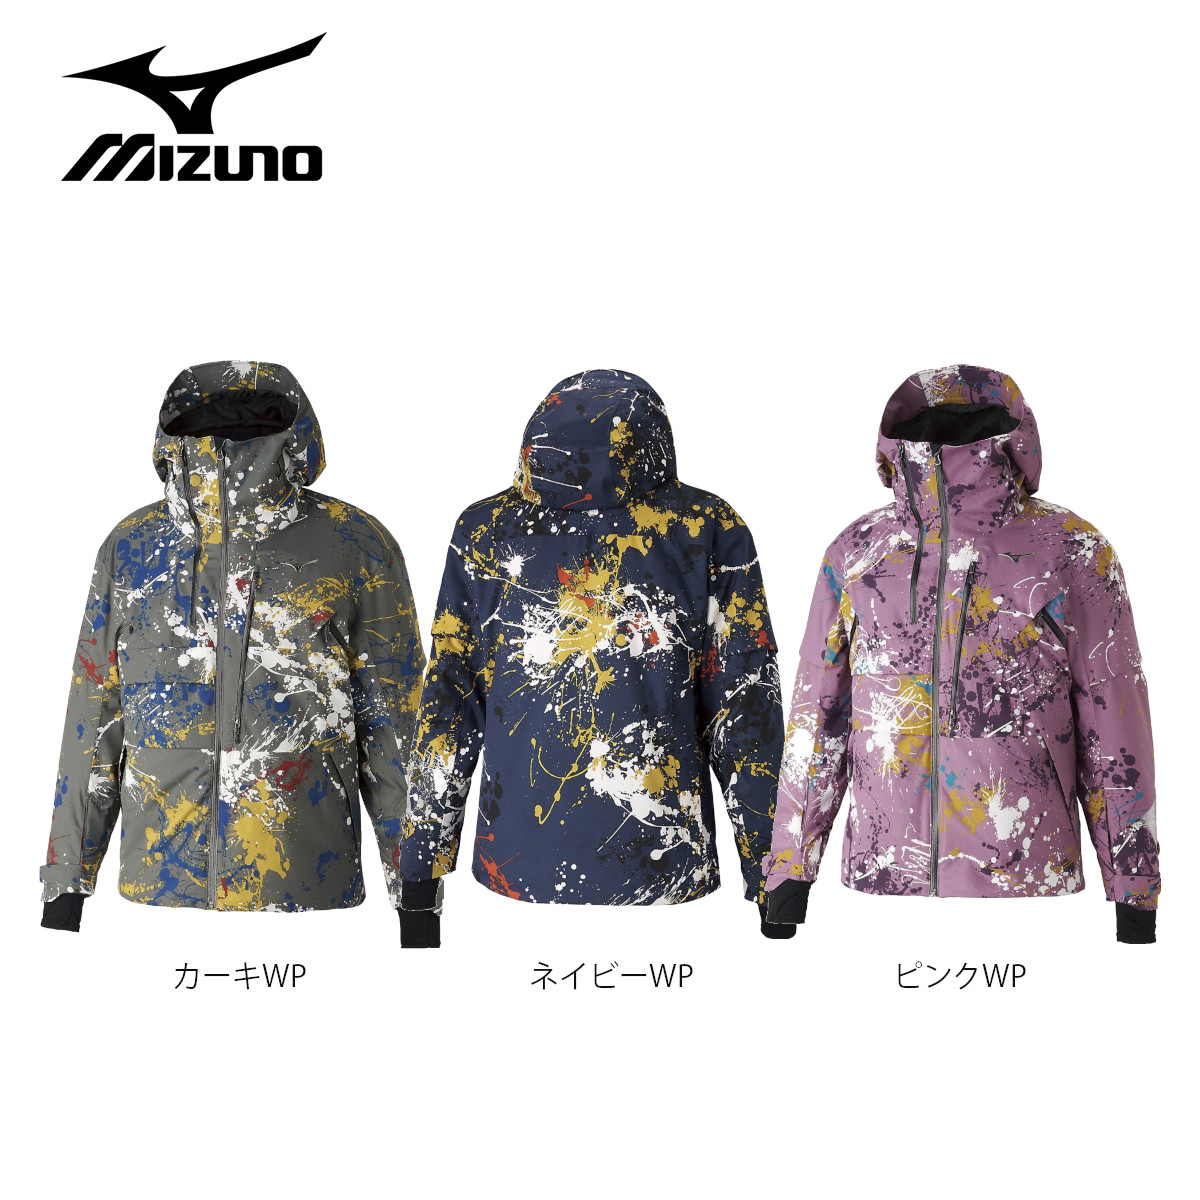 ります MIZUNO - ミズノ スキーウェア メンズの通販 by nao's shop